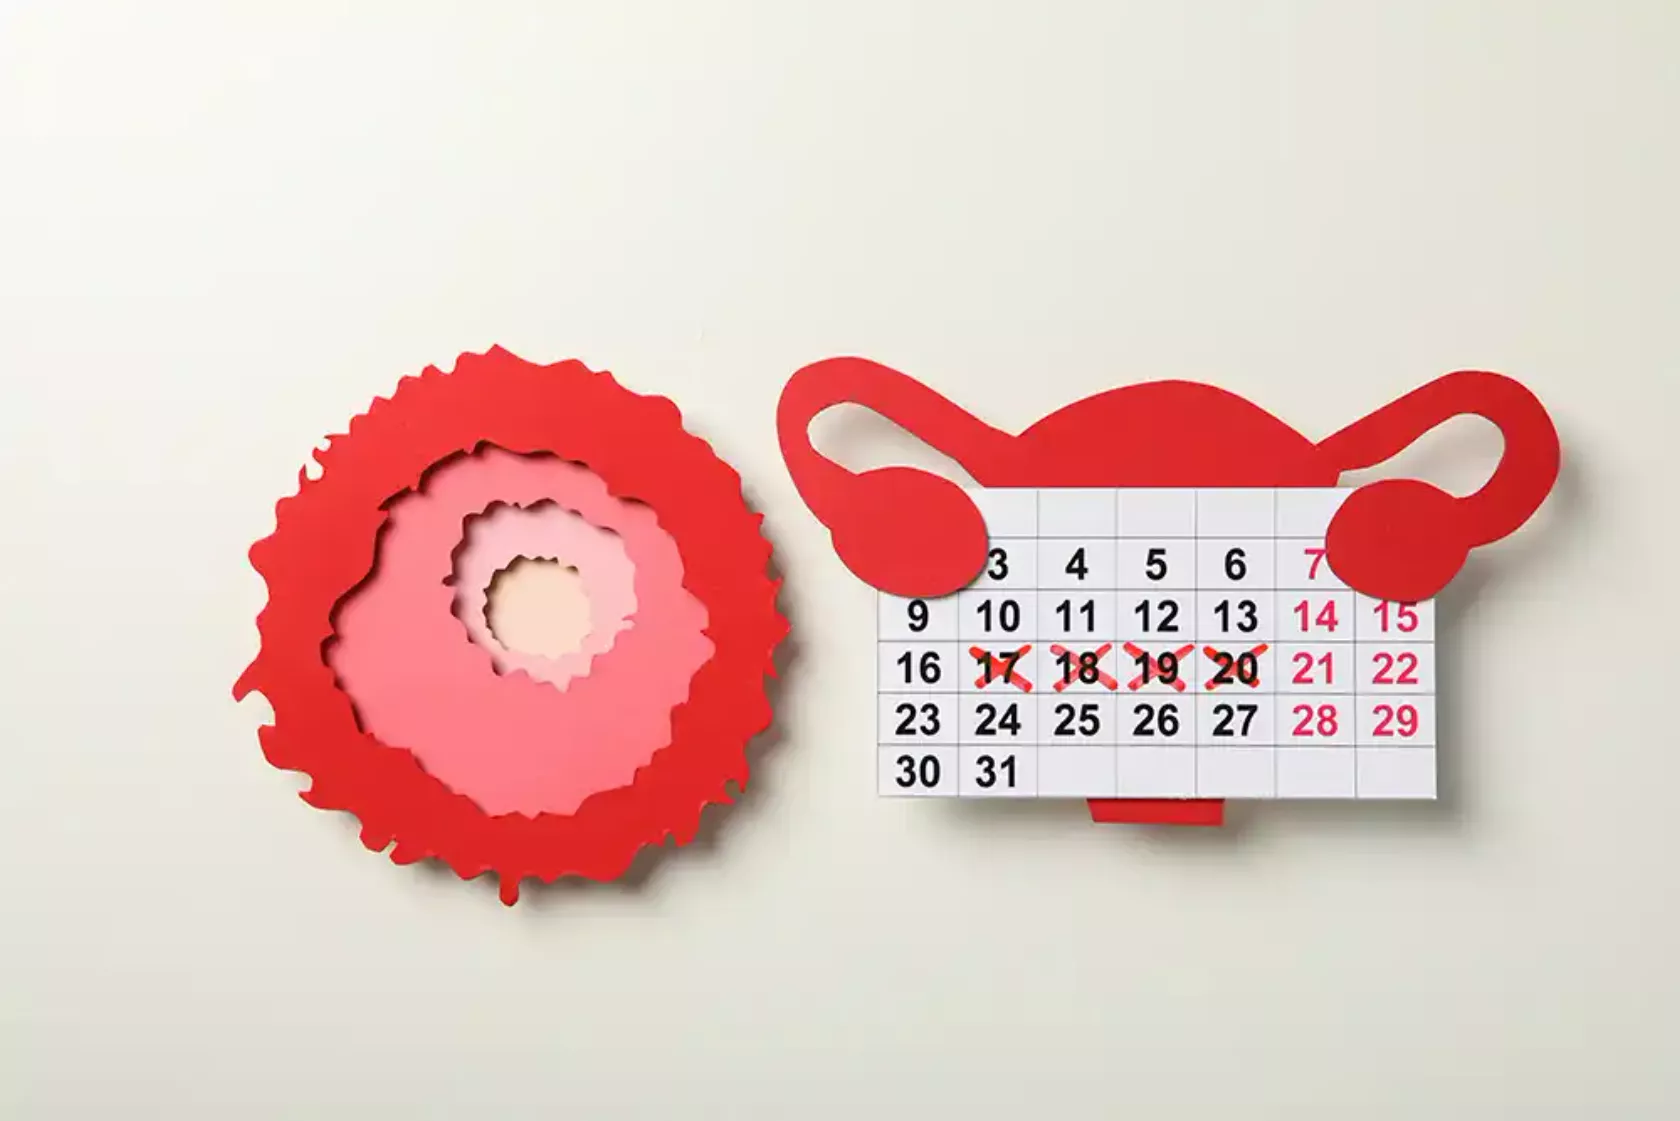 Papier-Modell eines Uterus und Kalender mit markierten Tagen der Fruchtbarkeit und Ovarien.